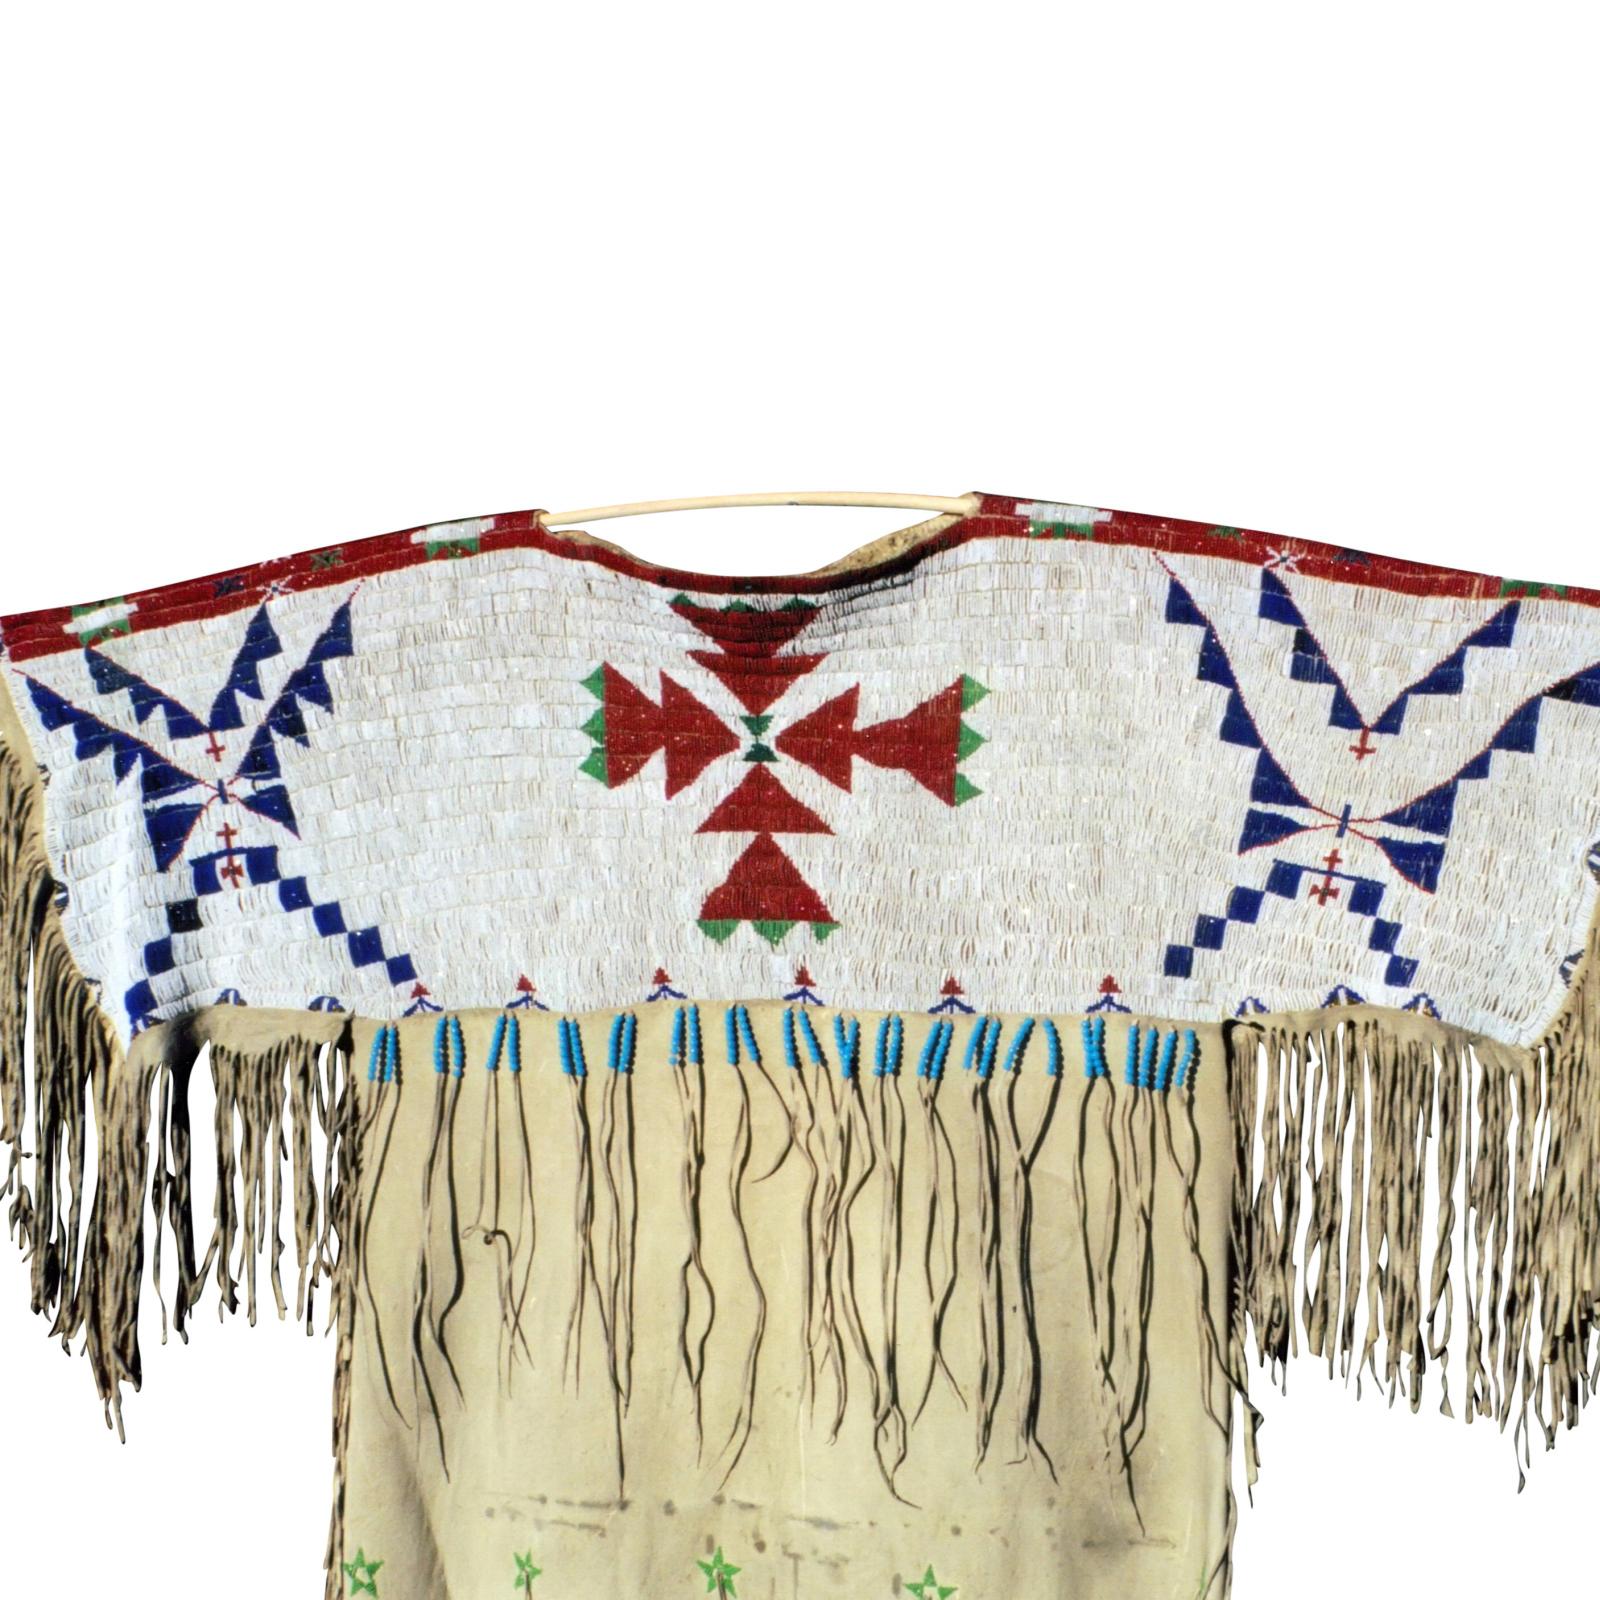 Perles à facettes ; robe Arapaho/Sioux sur buffle tanné. Design/One simple à quatre couleurs. Il s'agit probablement de la première robe réalisée après le quilling. La robe est ornée d'étoiles et le bas de la robe est orné de perles.

Période :